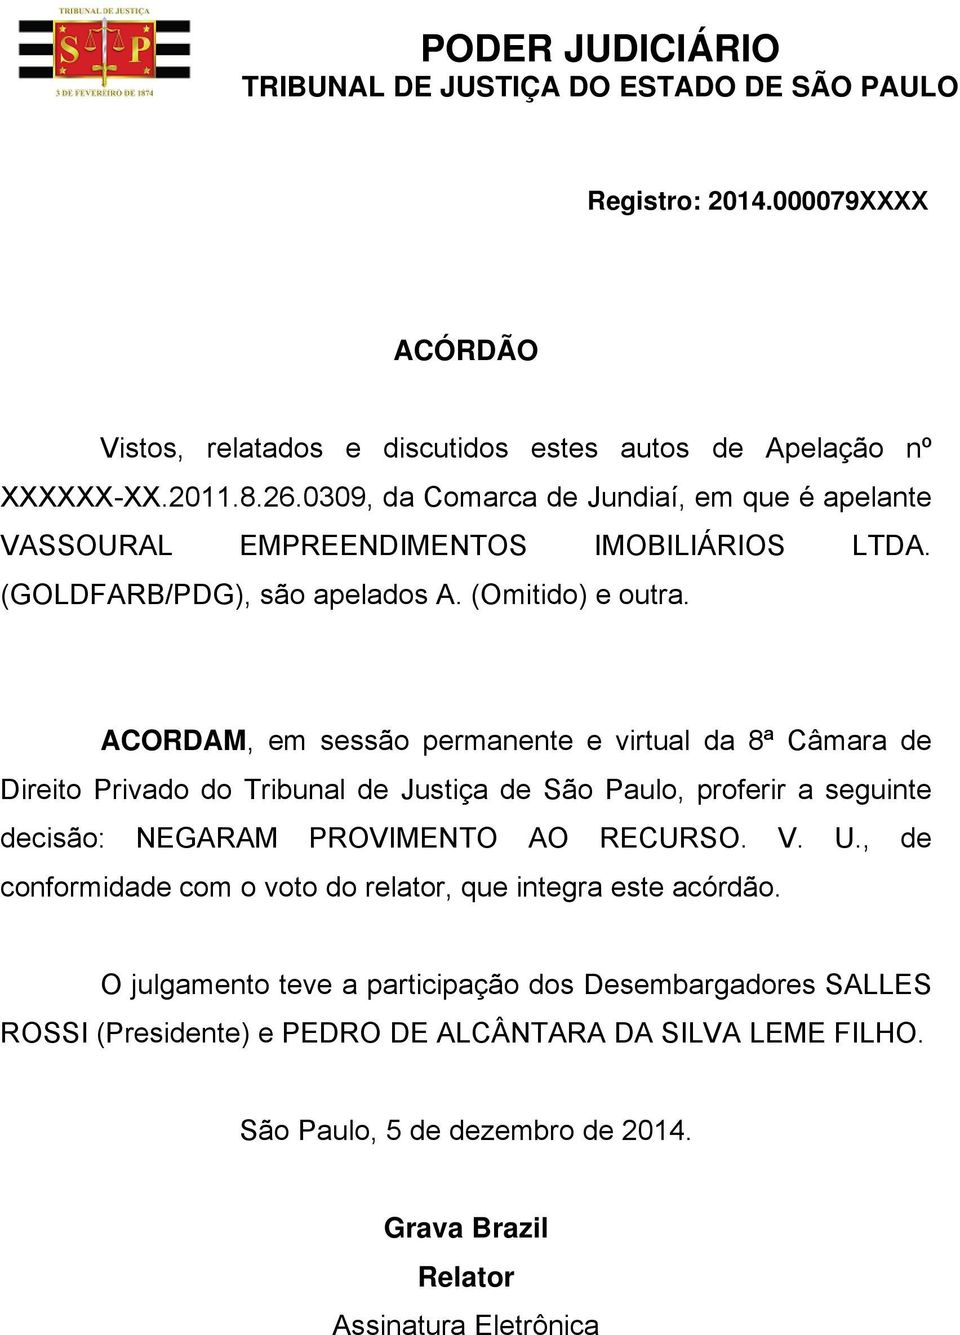 ACORDAM, em sessão permanente e virtual da 8ª Câmara de Direito Privado do Tribunal de Justiça de São Paulo, proferir a seguinte decisão: NEGARAM PROVIMENTO AO RECURSO. V. U.